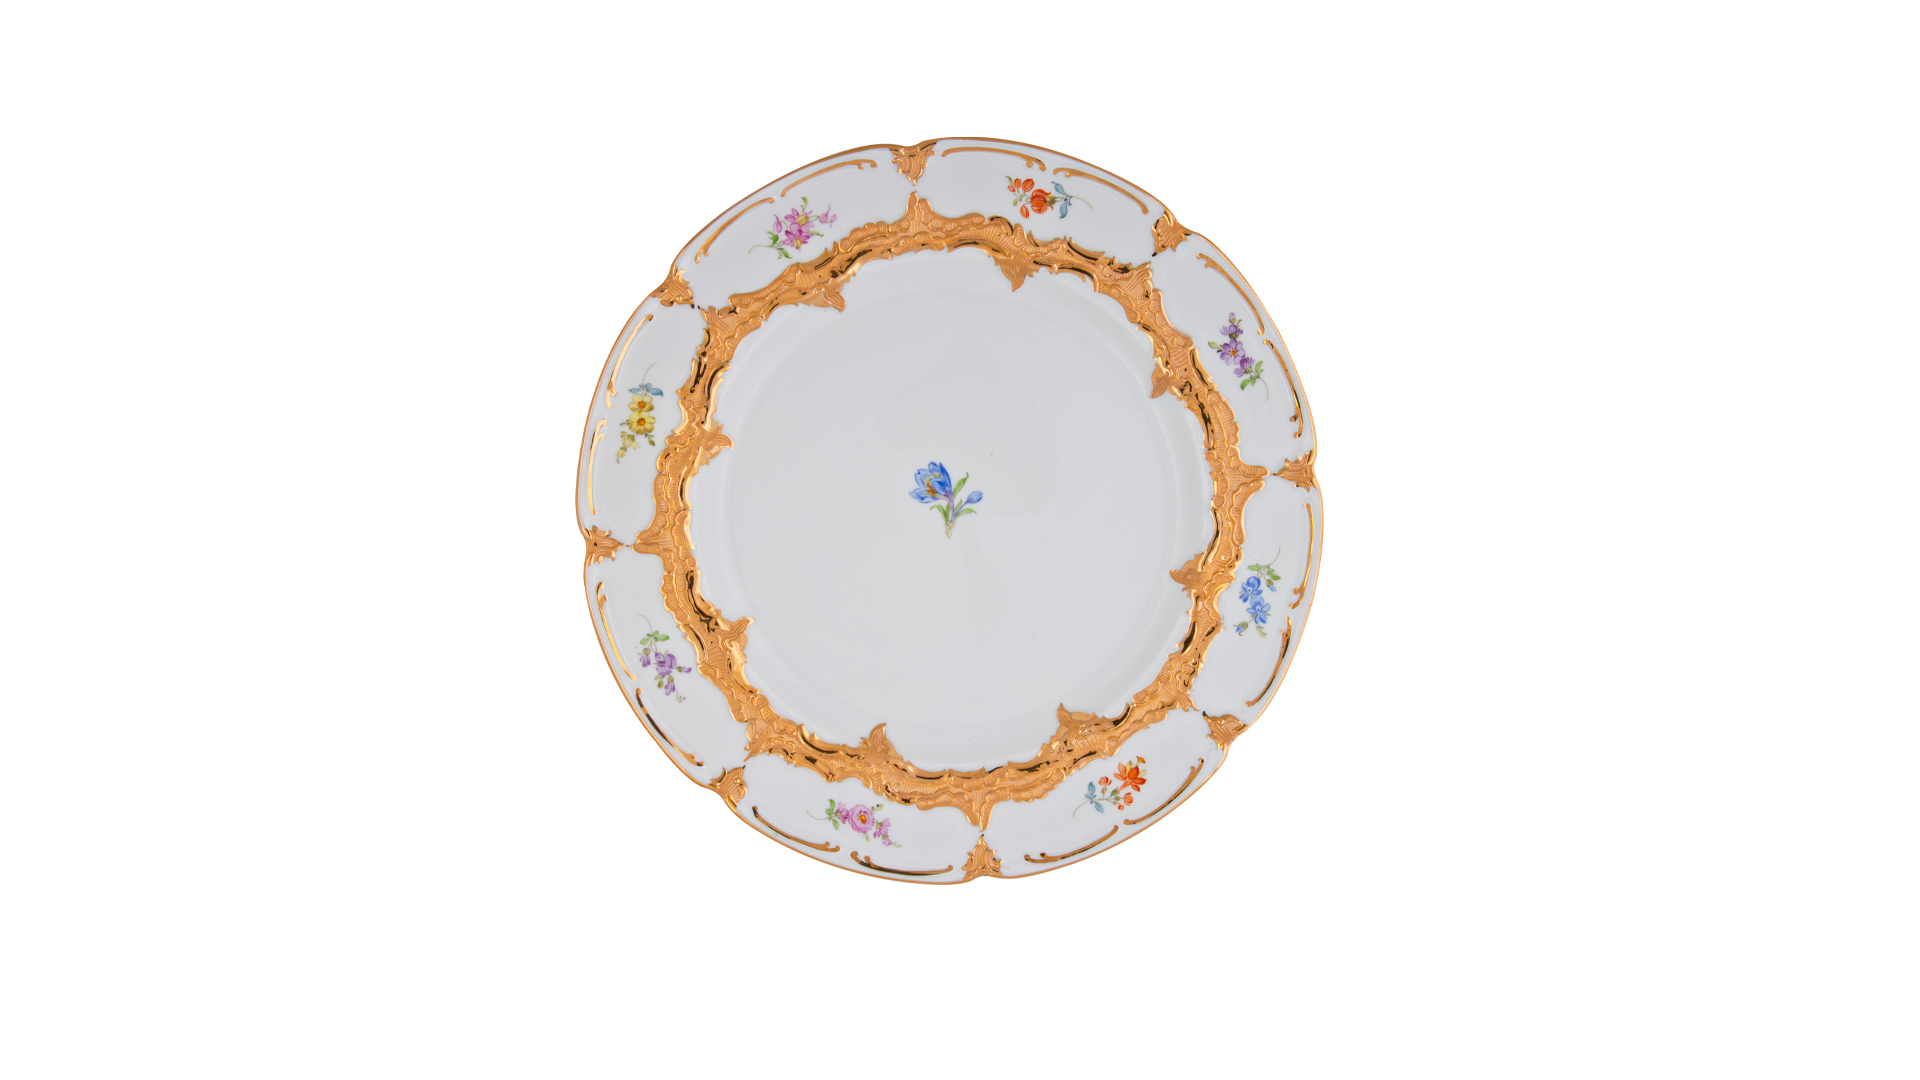 Тарелка пирожковая Meissen 15,5 см Форма - Б, россыпь цветов